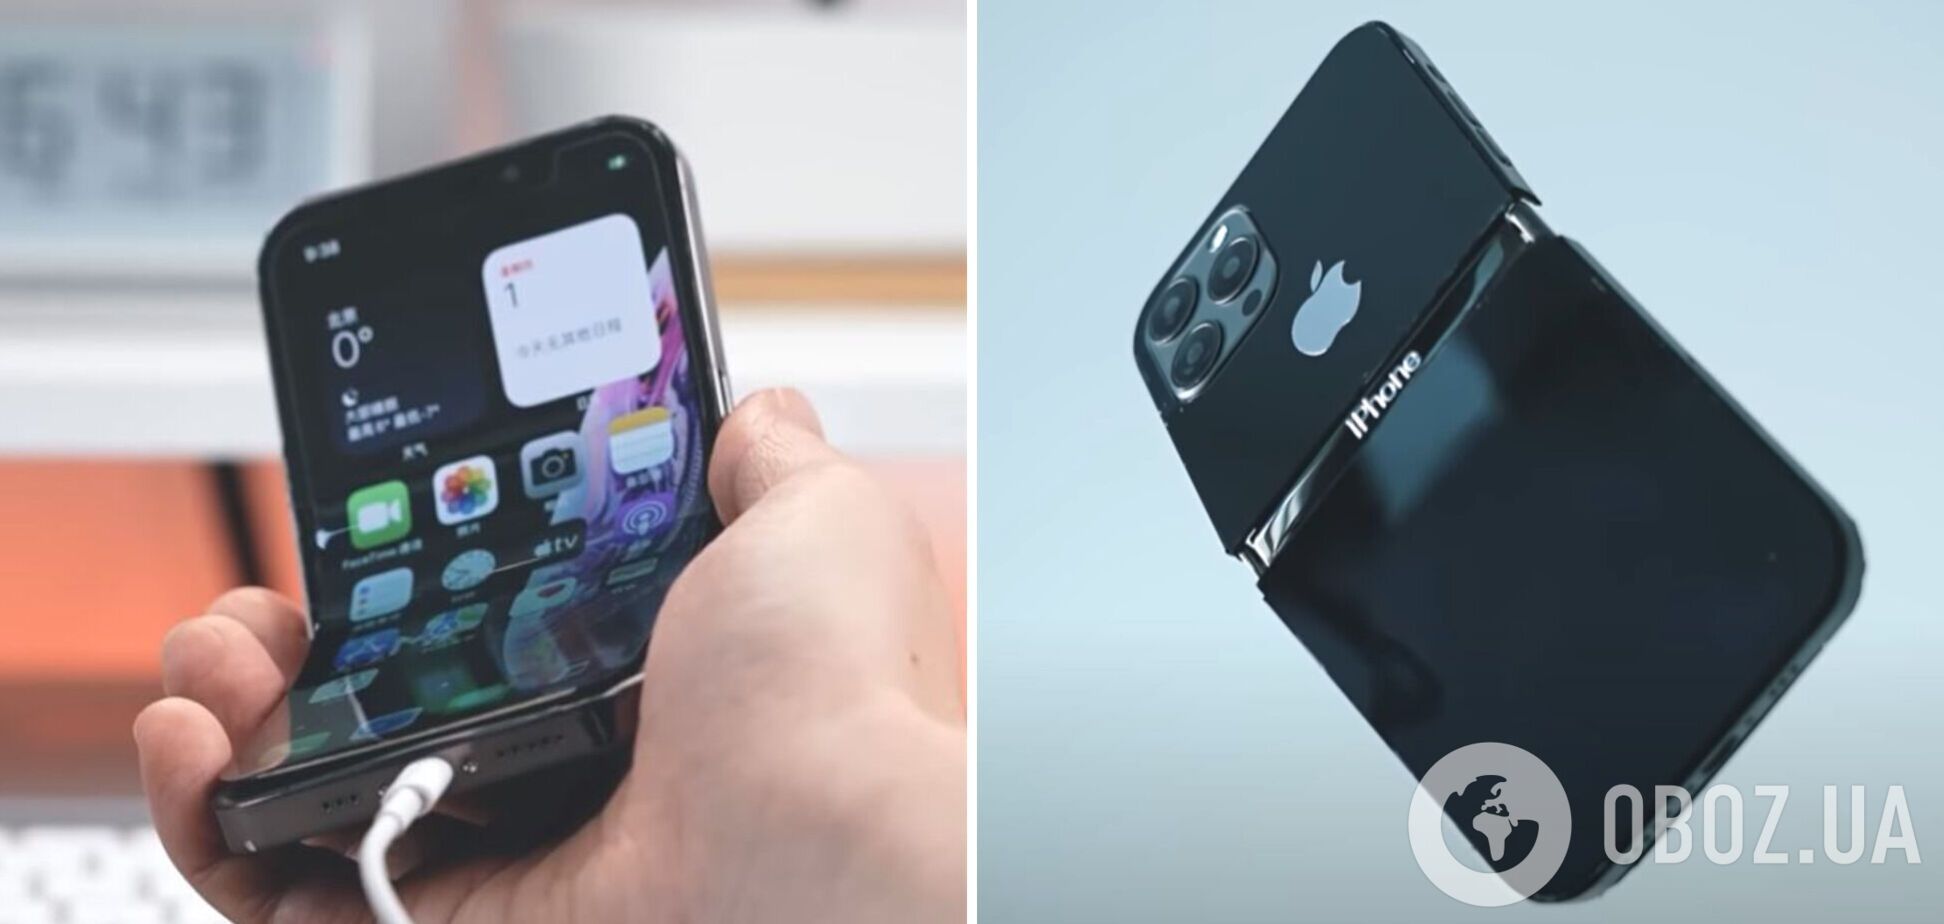 Фанат Apple создал первый в мире работающий iPhone с гибким экраном. Видео